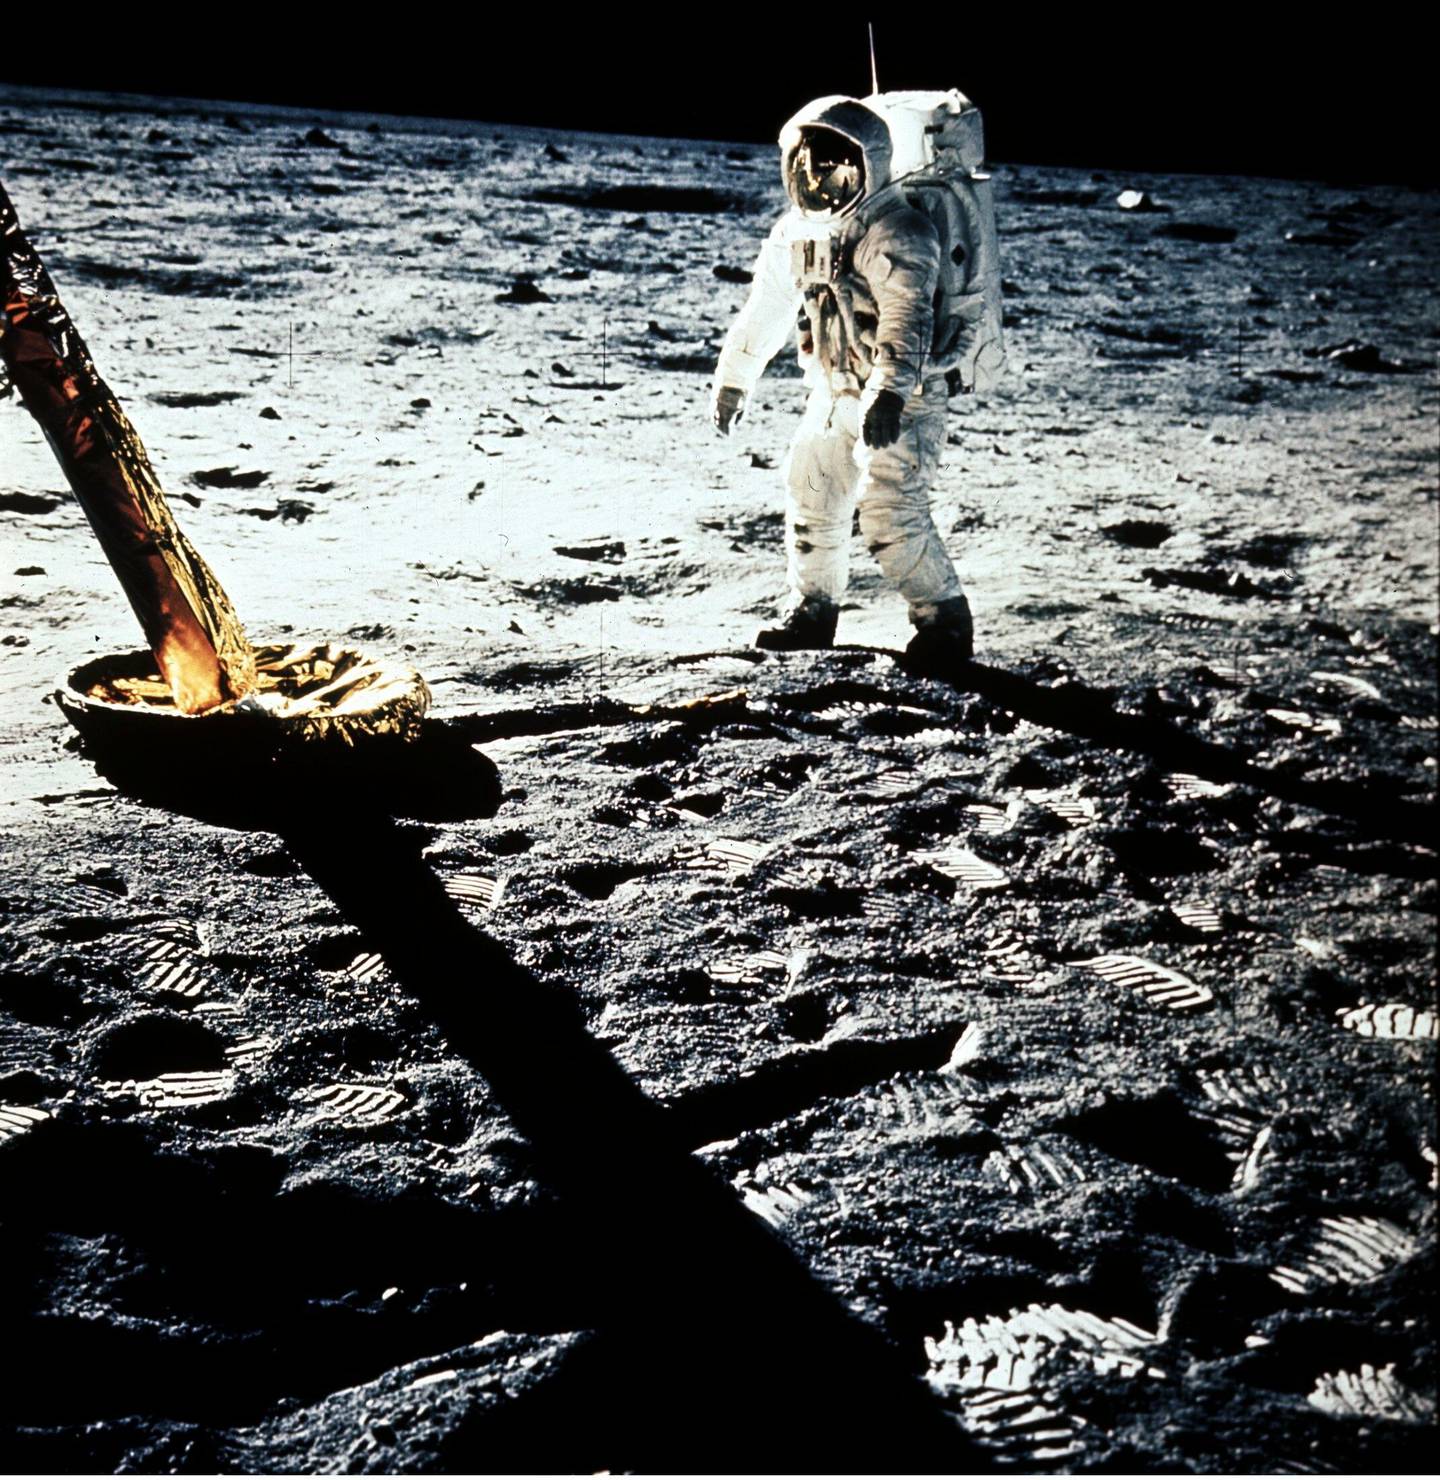 Månen 21 juli 1969. Romskipet "Apollo 11"s medbrakte månelandingsfartøy "Eagle" har landet på Månen og Neil Armstrong har satt sine ben som det første mennesket på Månen."Et lite skritt for han, men et stort fremskritt for menneskeheten", rapporterer han i TV-overføringen som blir sendt verden over direkte fra Månen. Sammen med Edwin Aldrin oppholder de to astronautene seg 22 timer på Månen og to av disse timene utenfor månelandingsfartøyet.
Arkivfoto SCANPIX Sverige.